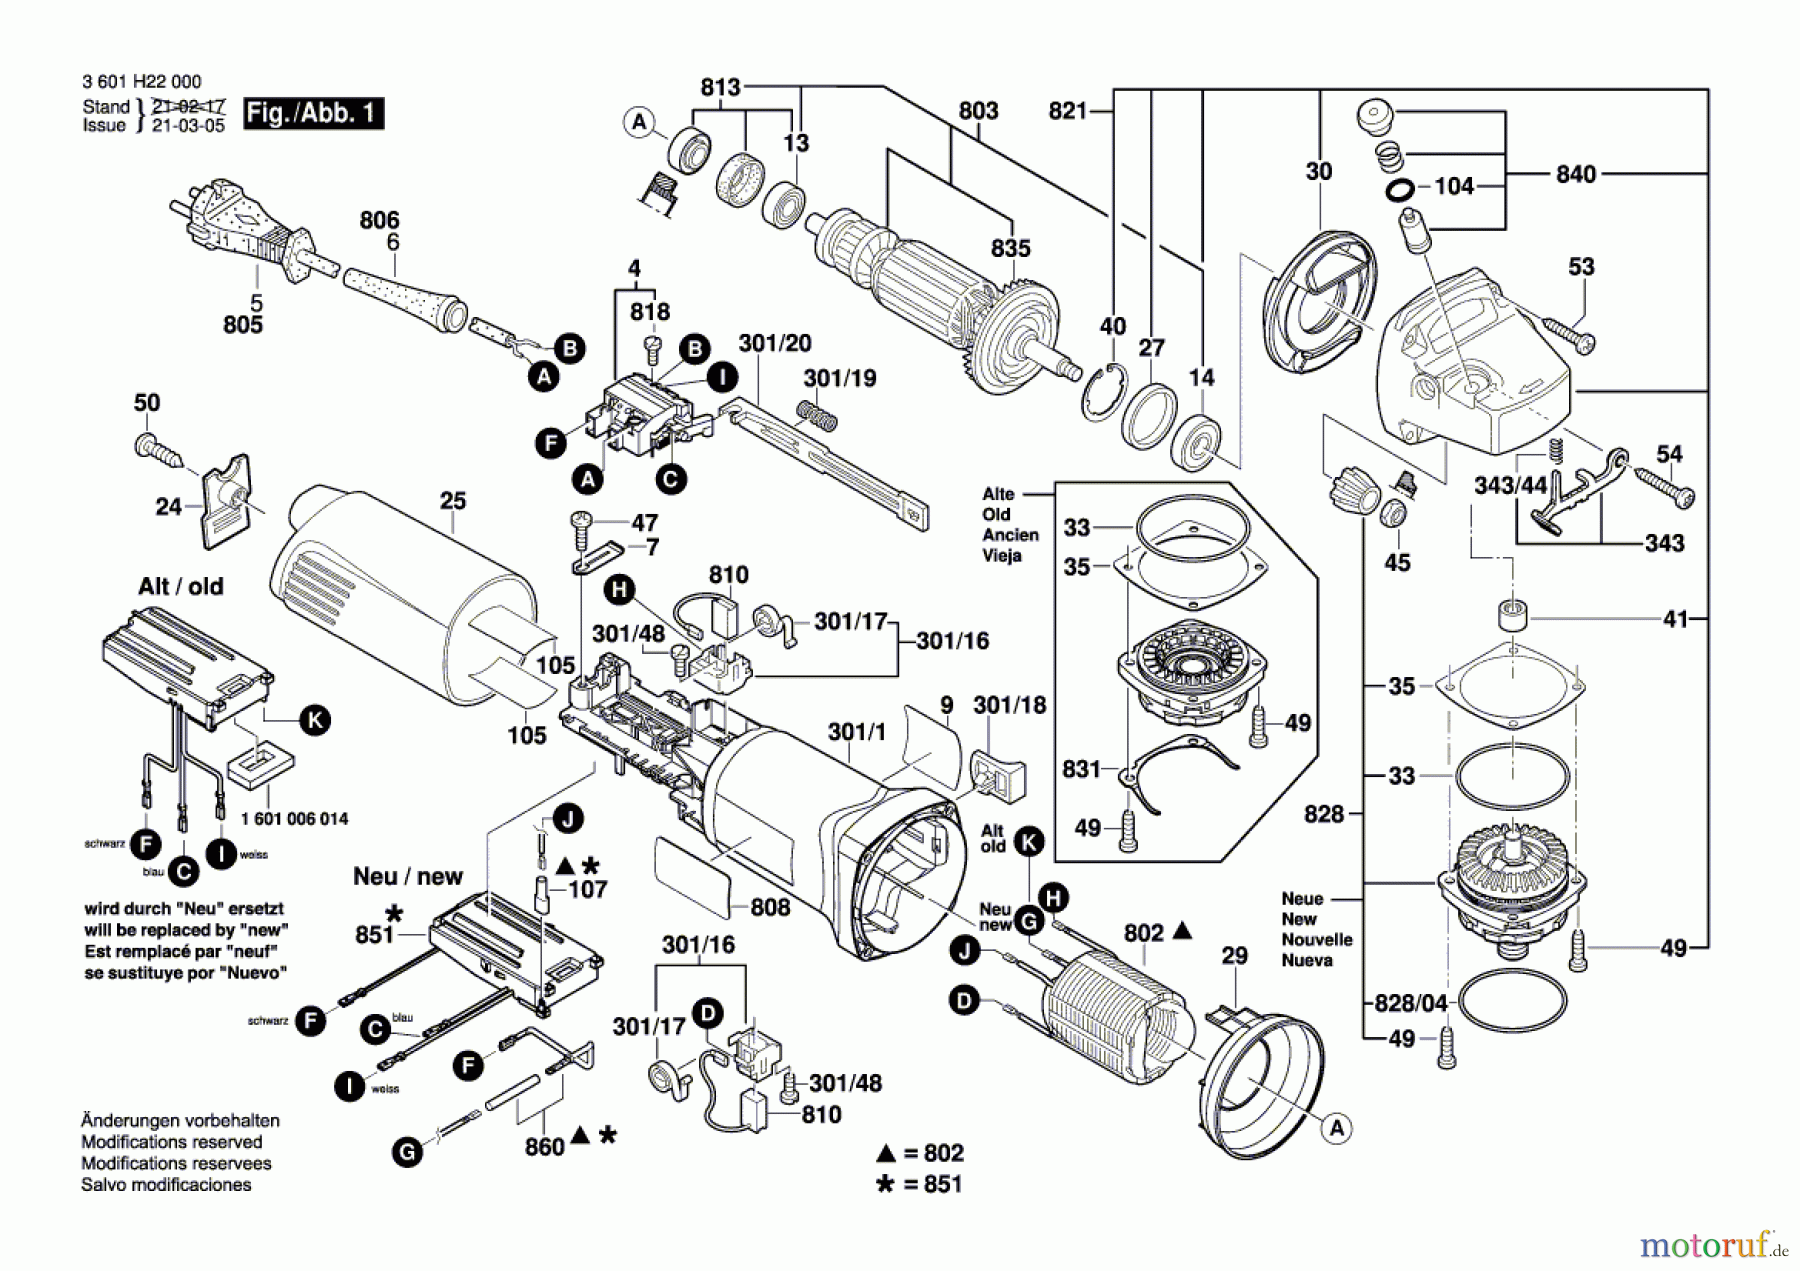  Bosch Werkzeug Winkelschleifer GWS 11-125 CIE Seite 1